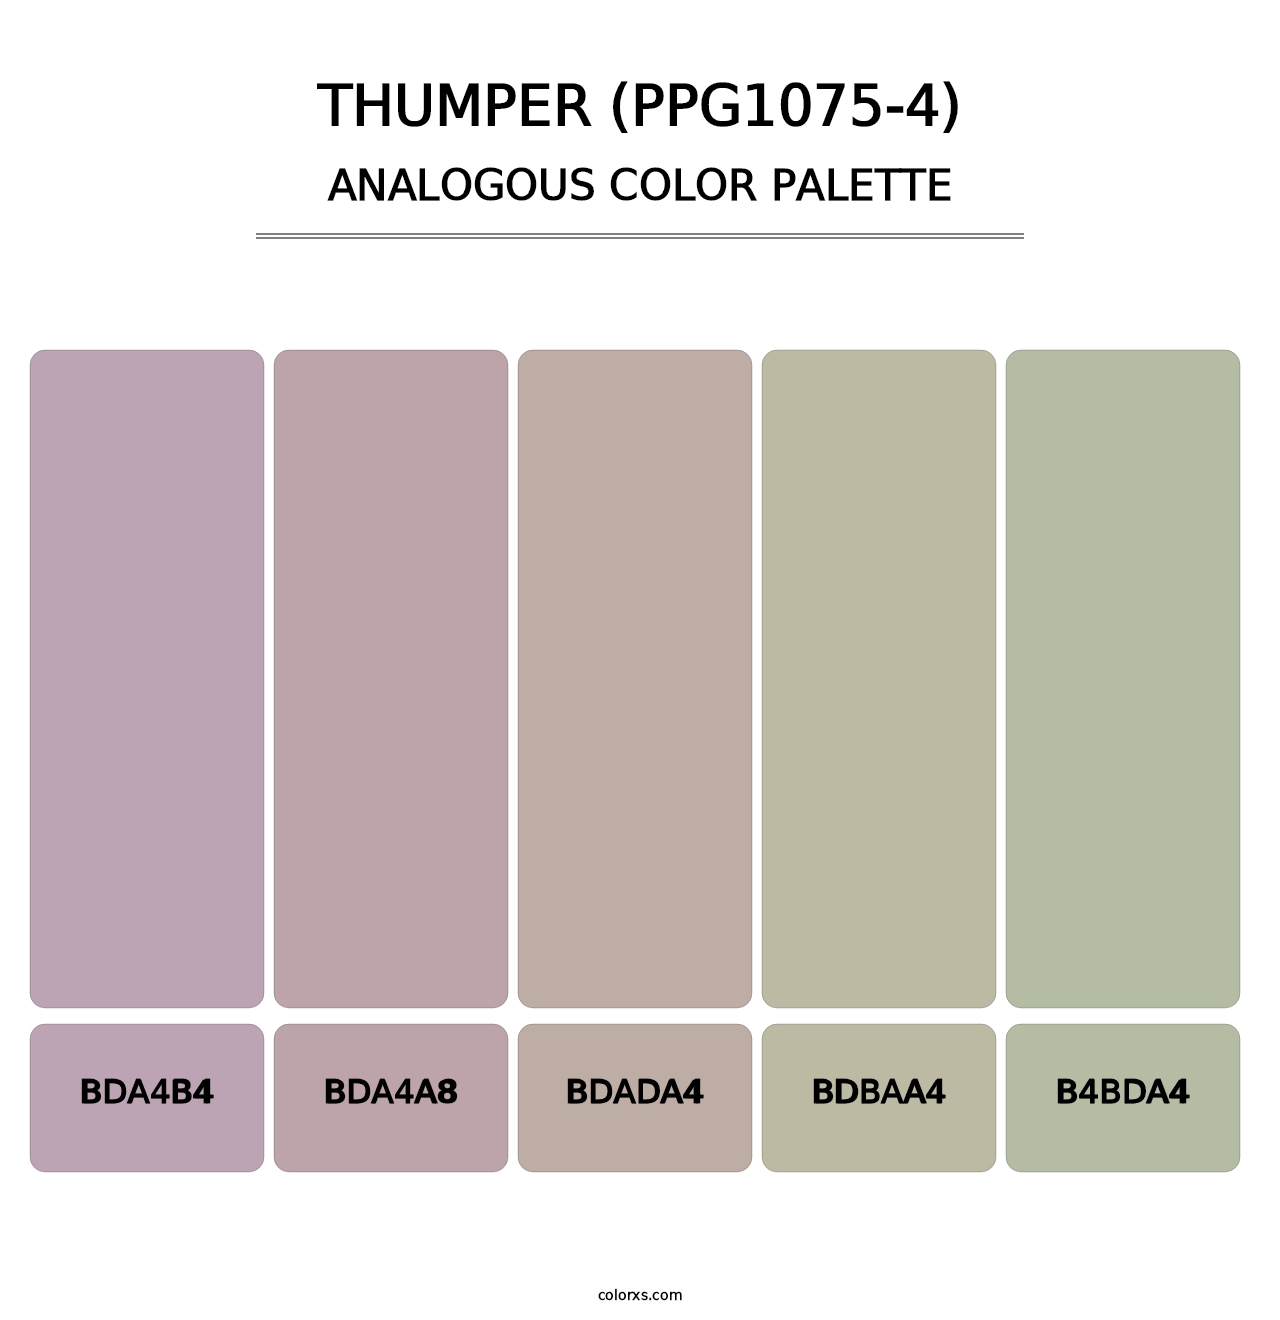 Thumper (PPG1075-4) - Analogous Color Palette